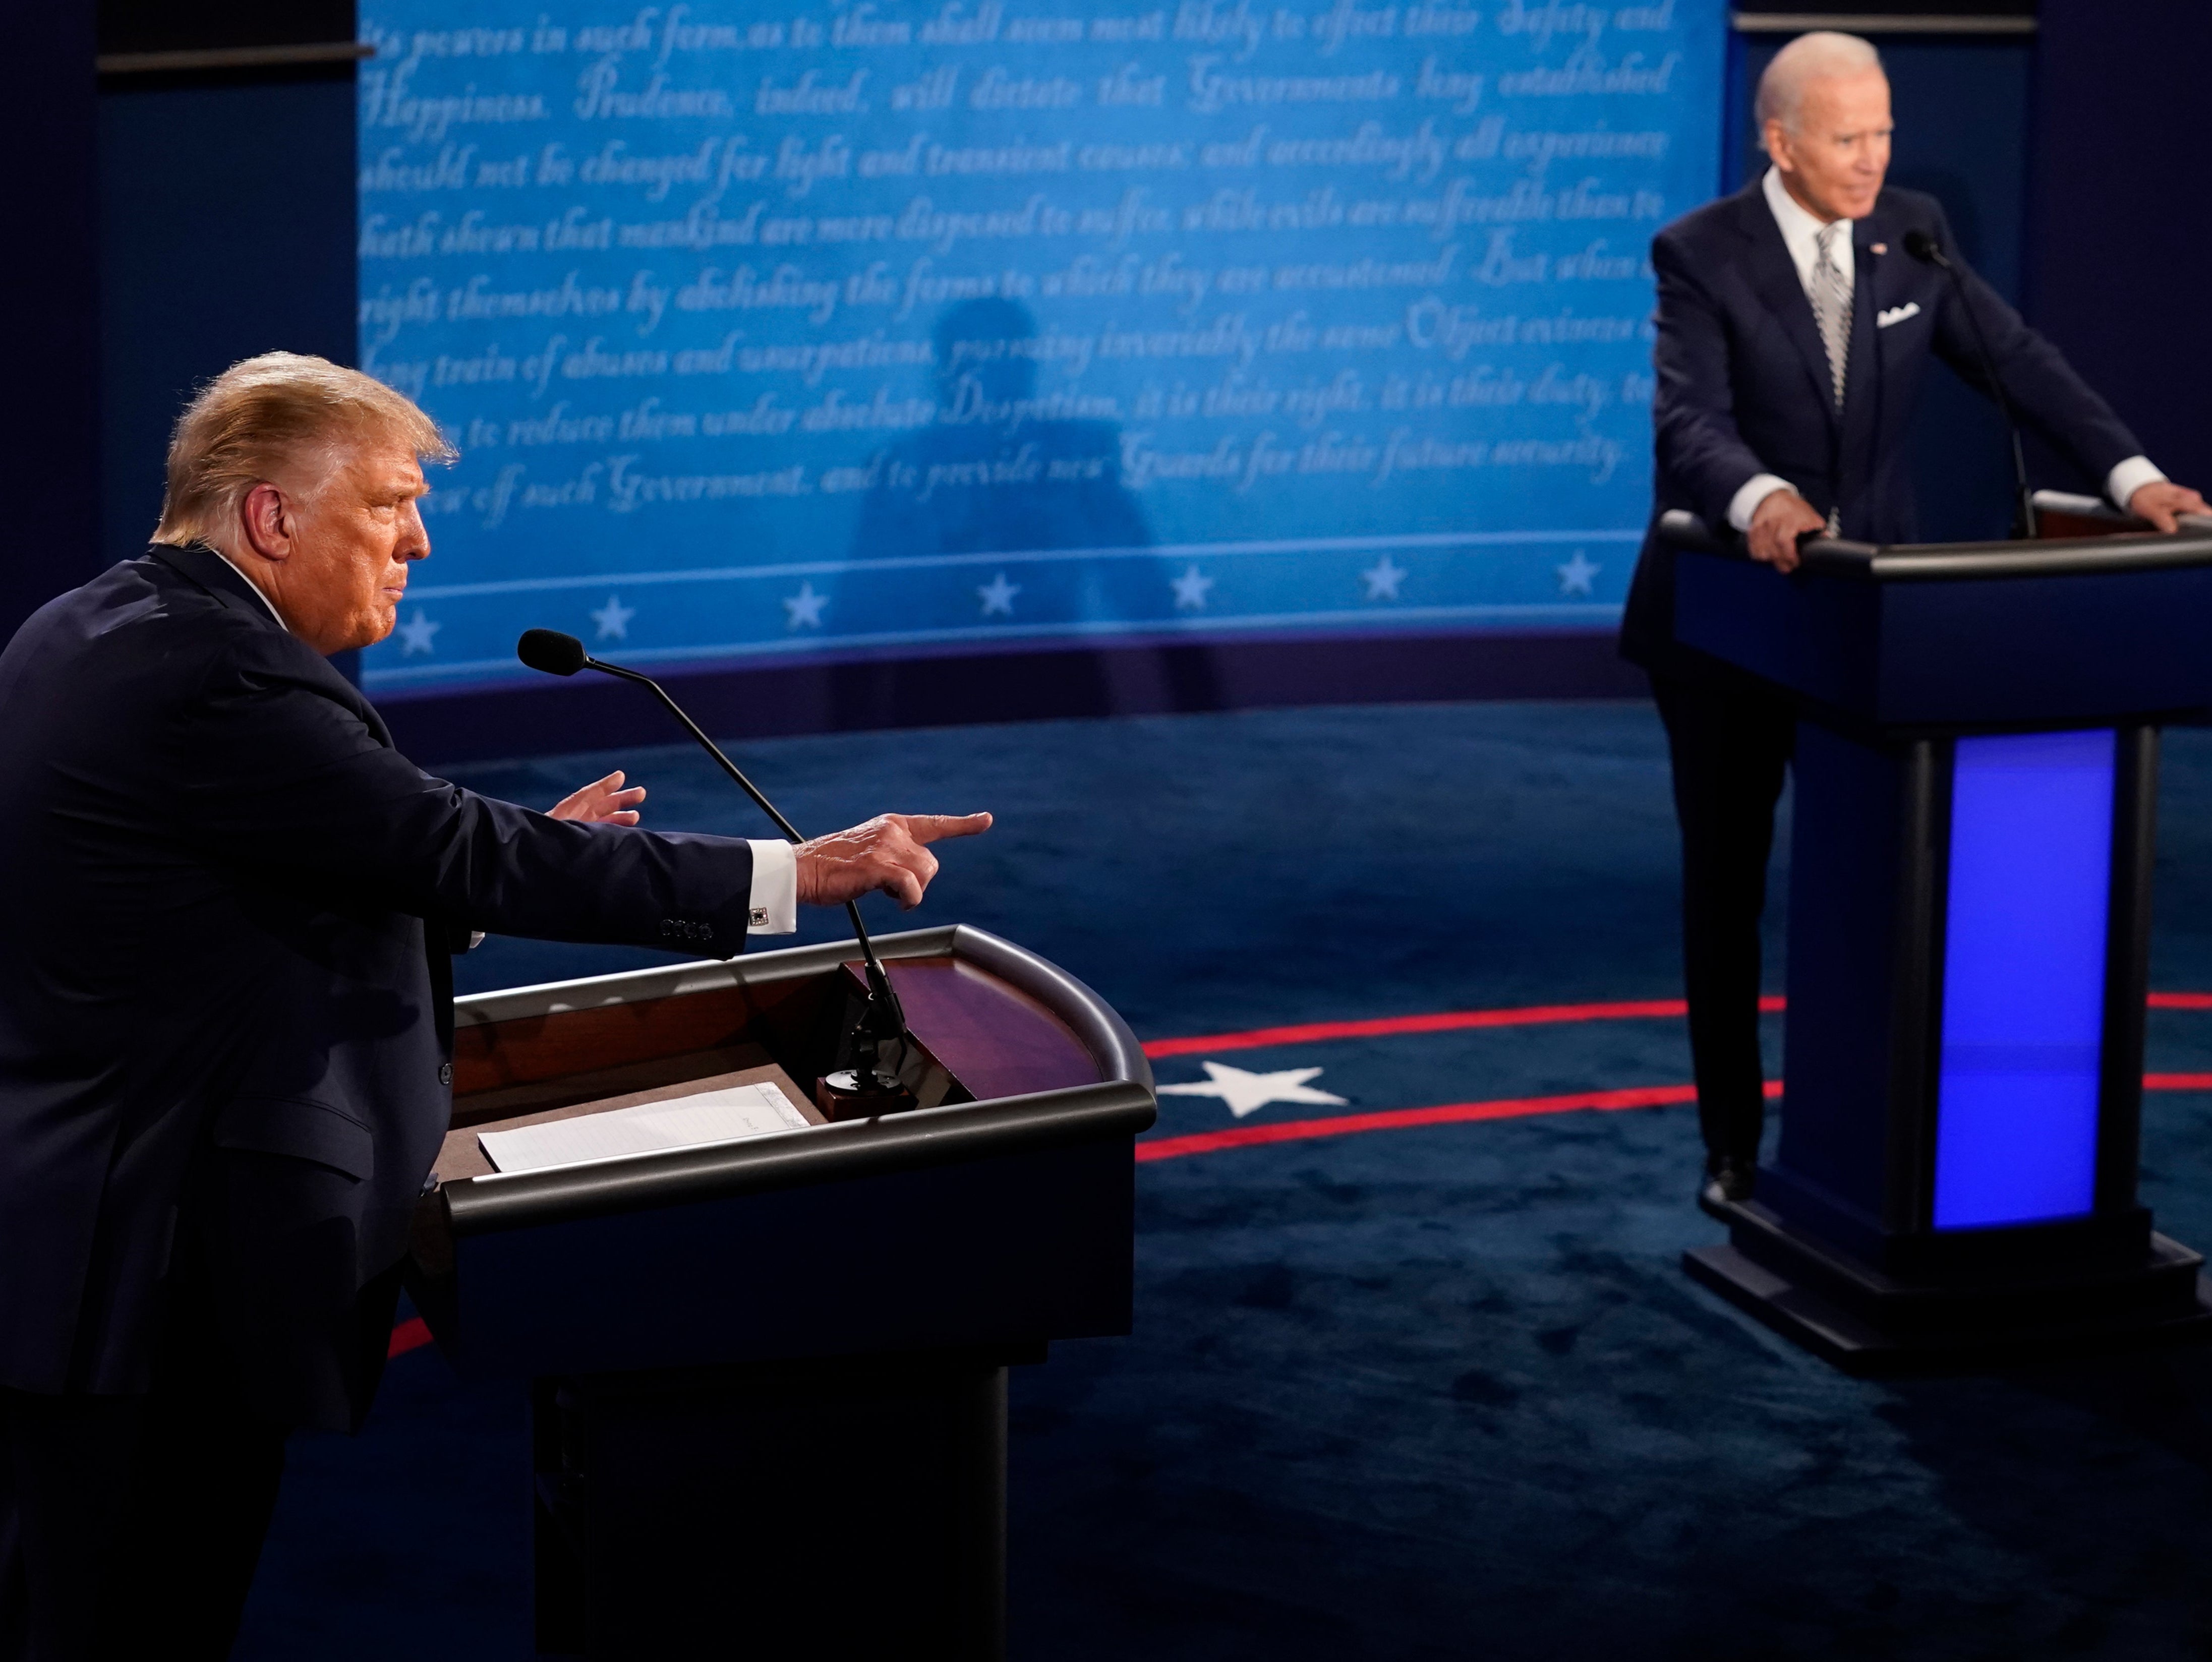 El formato de los debates sufrirá cambios para el segundo encuentro entre Trump y Biden.